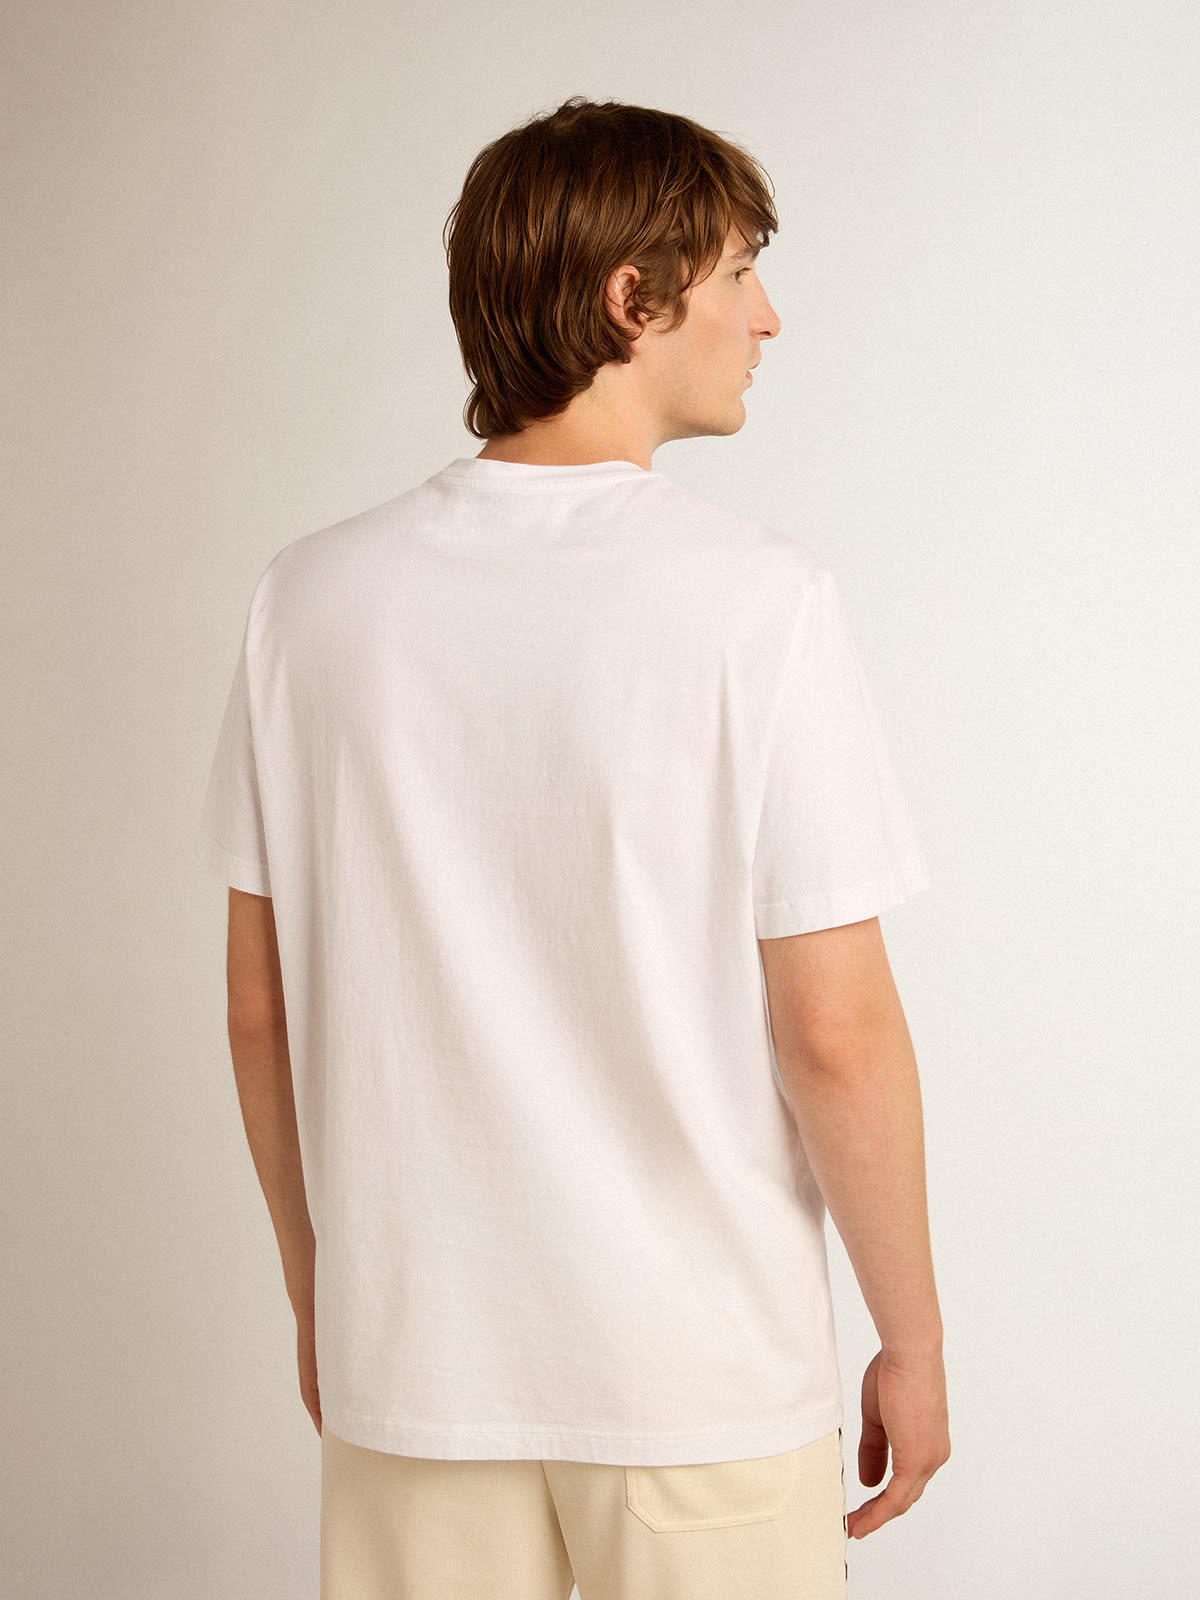 Golden Goose - T-shirt blanc collection Star avec étoile noire sur le devant in 